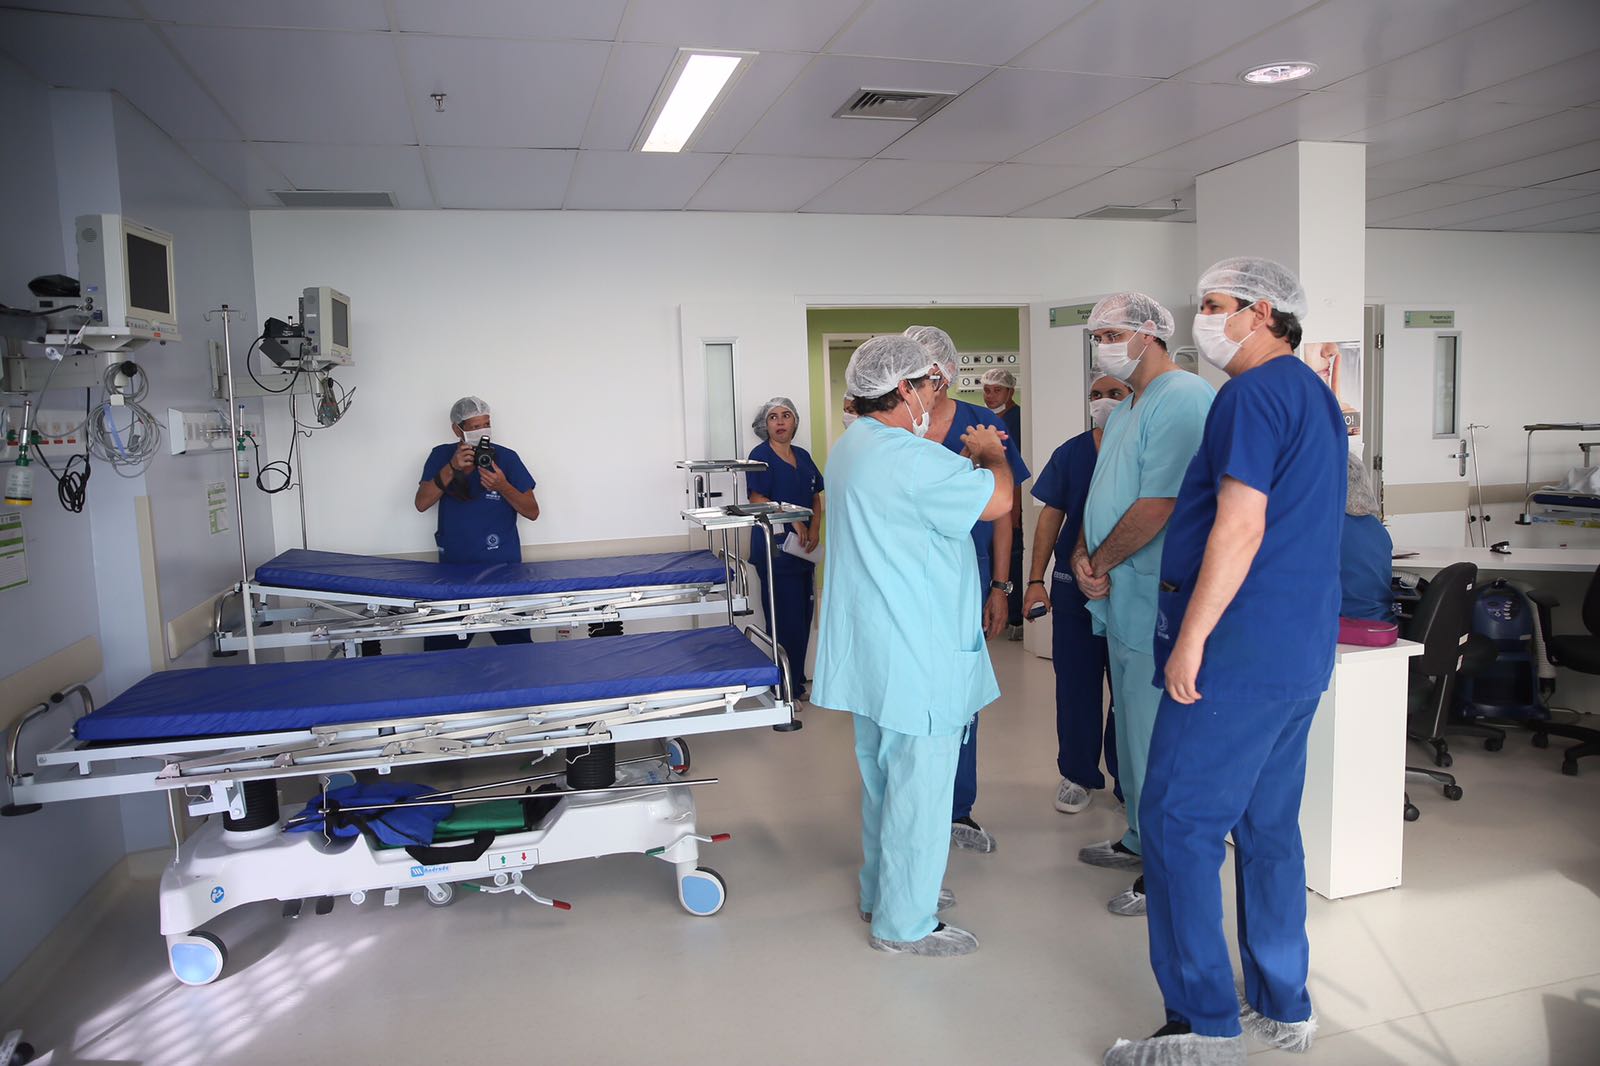 Ministro visita centro cirúrgico, onde parte dos profissionais contratados irá atuar